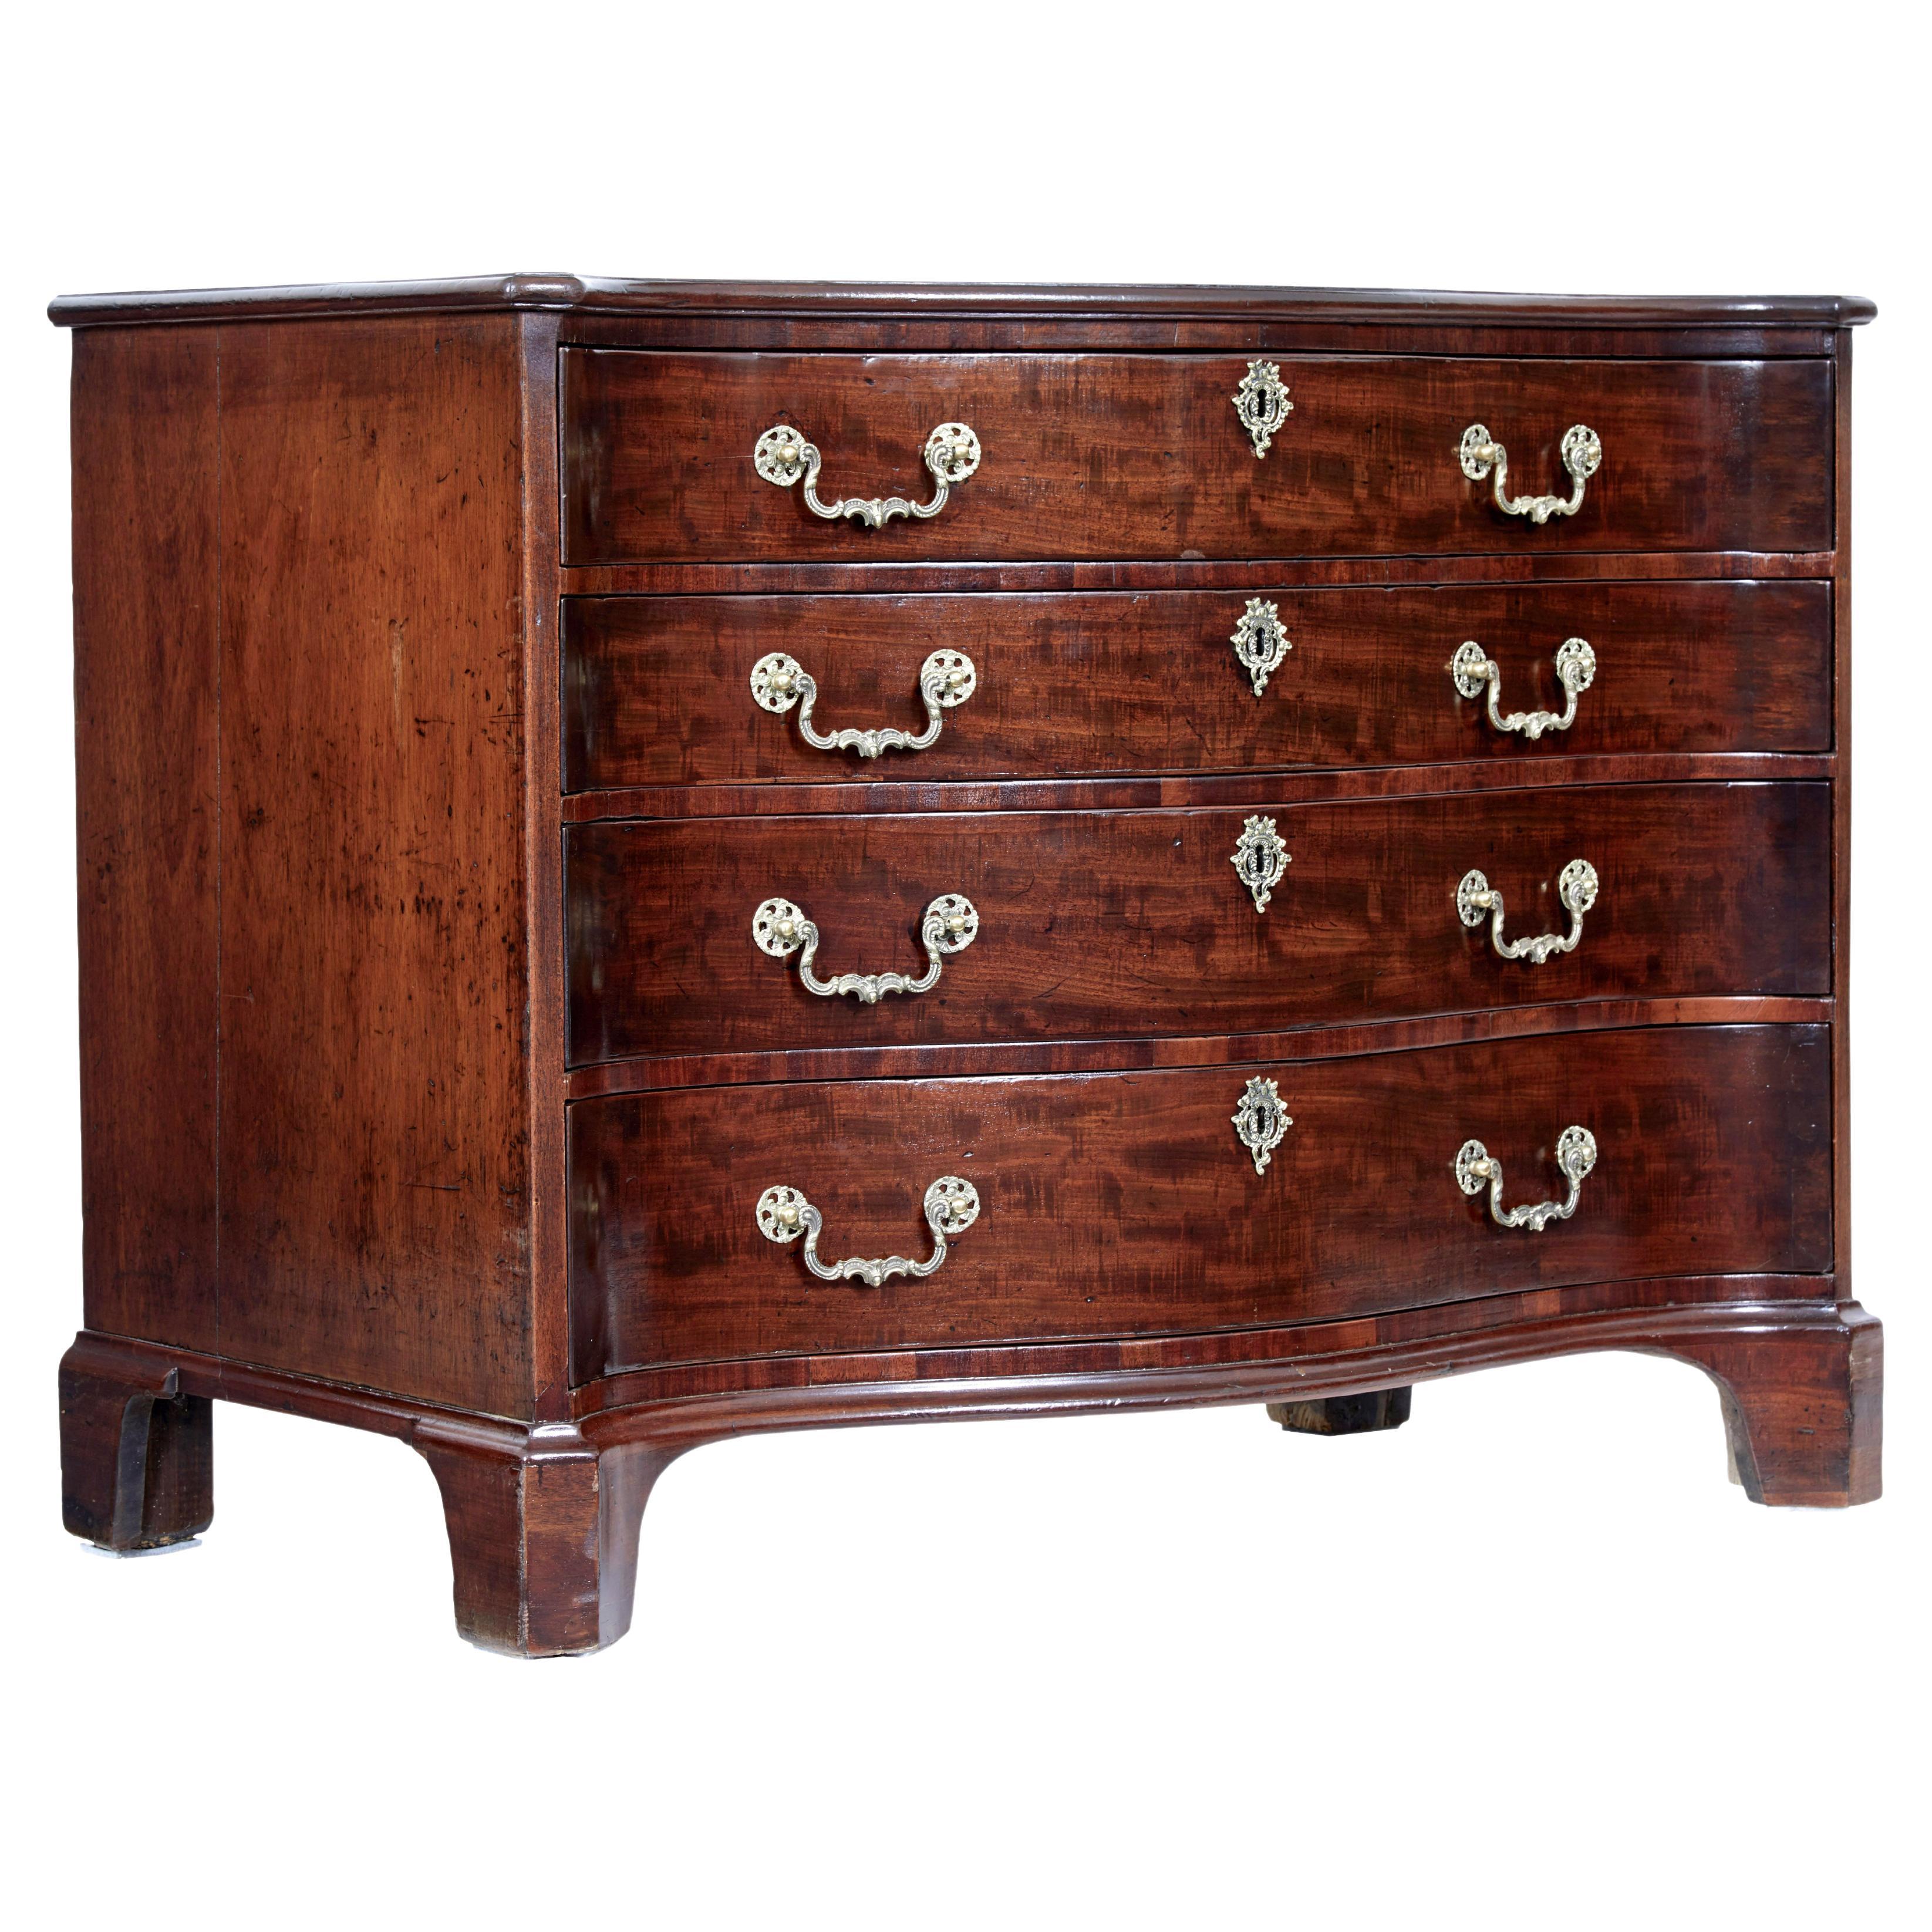 18th century Georgian mahogany serpentine chest of drawers